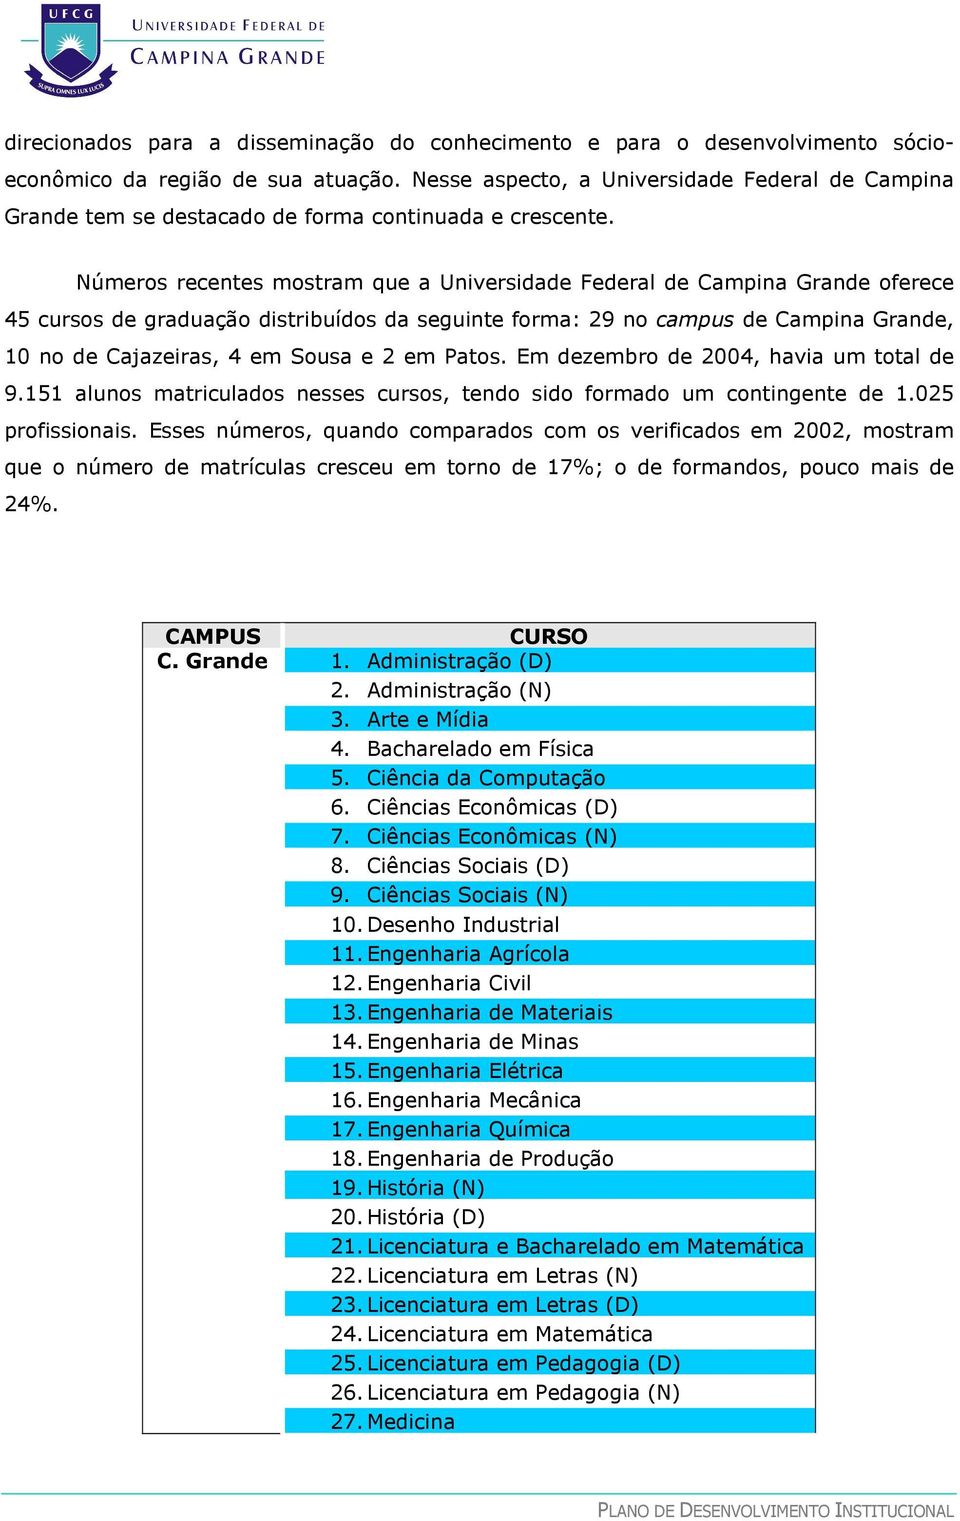 Números recentes mostram que a Universidade Federal de Campina Grande oferece 45 cursos de graduação distribuídos da seguinte forma: 29 no campus de Campina Grande, 10 no de Cajazeiras, 4 em Sousa e